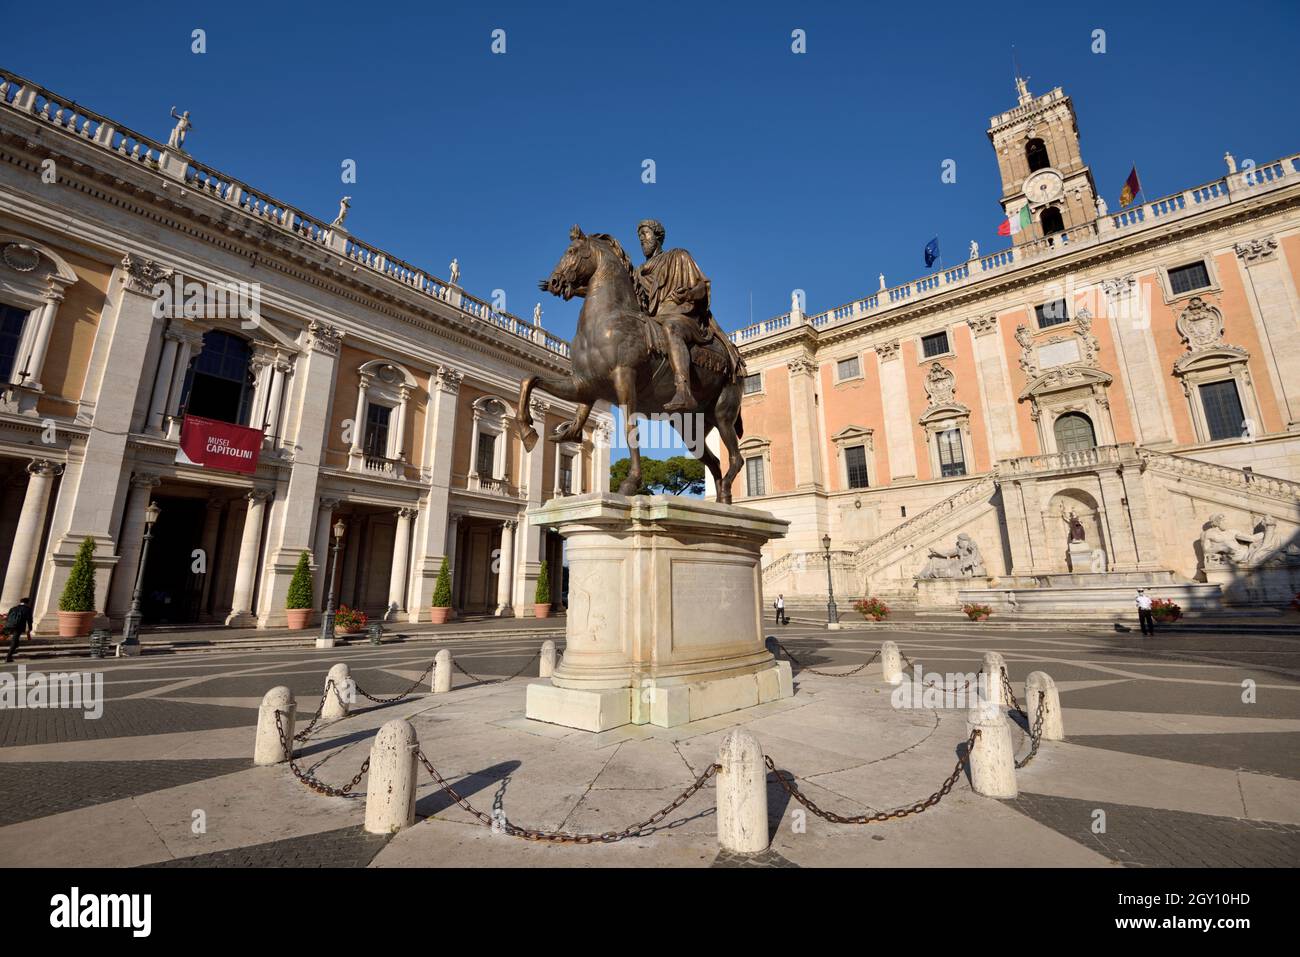 Italy, Rome, Piazza del Campidoglio, statue of Marcus Aurelius, Palazzo Nuovo and Palazzo Senatorio Stock Photo